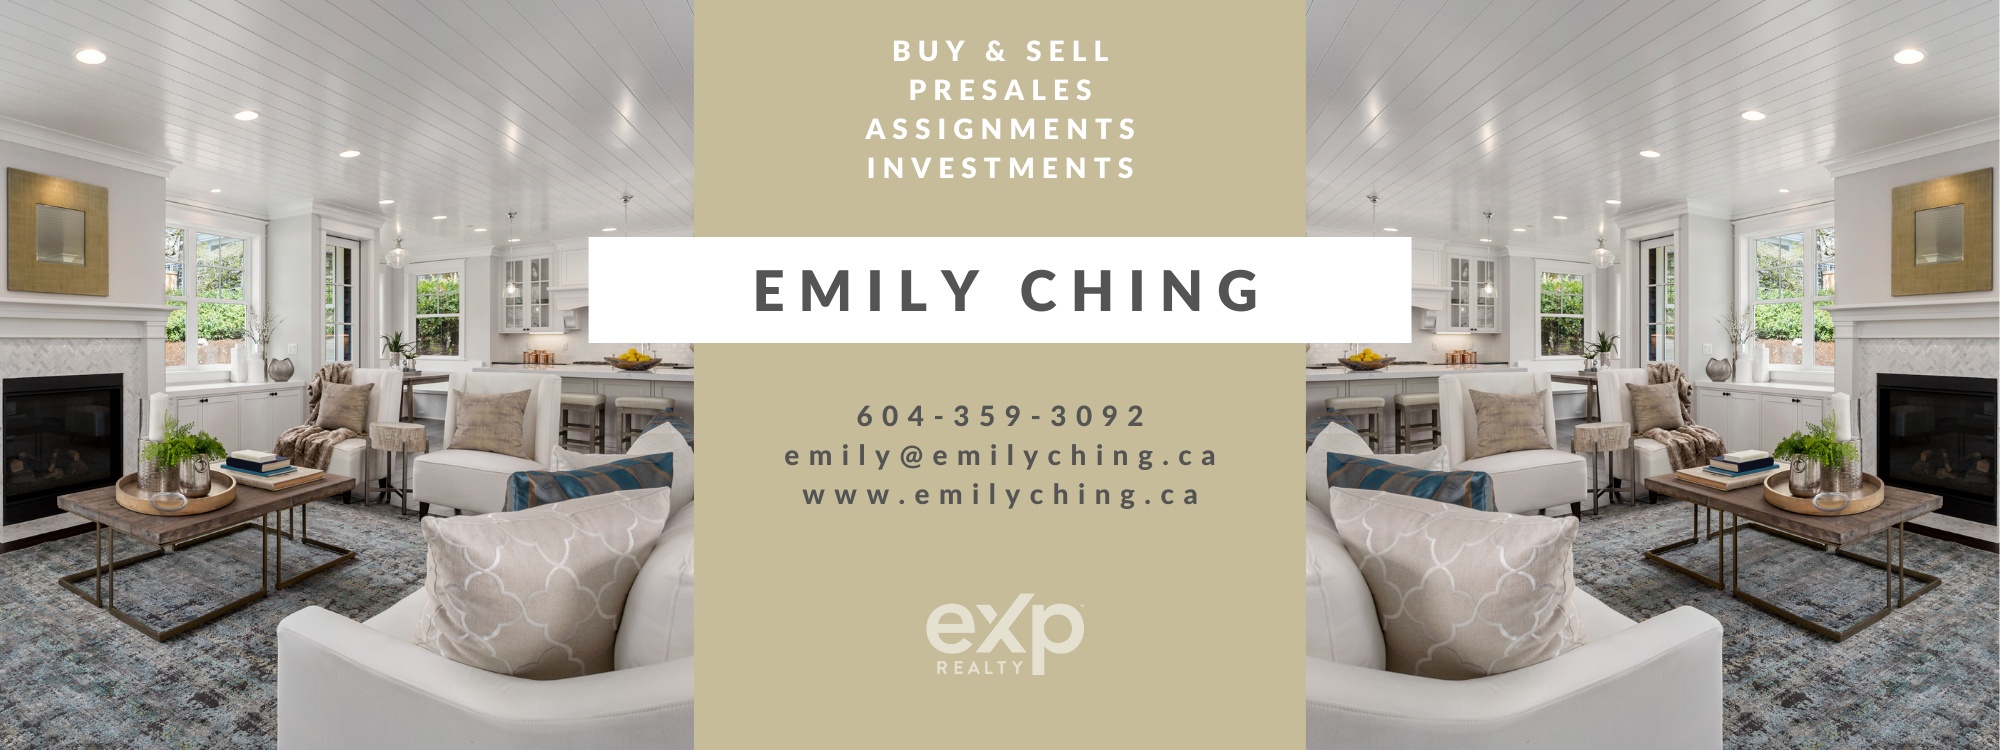 Emily Ching